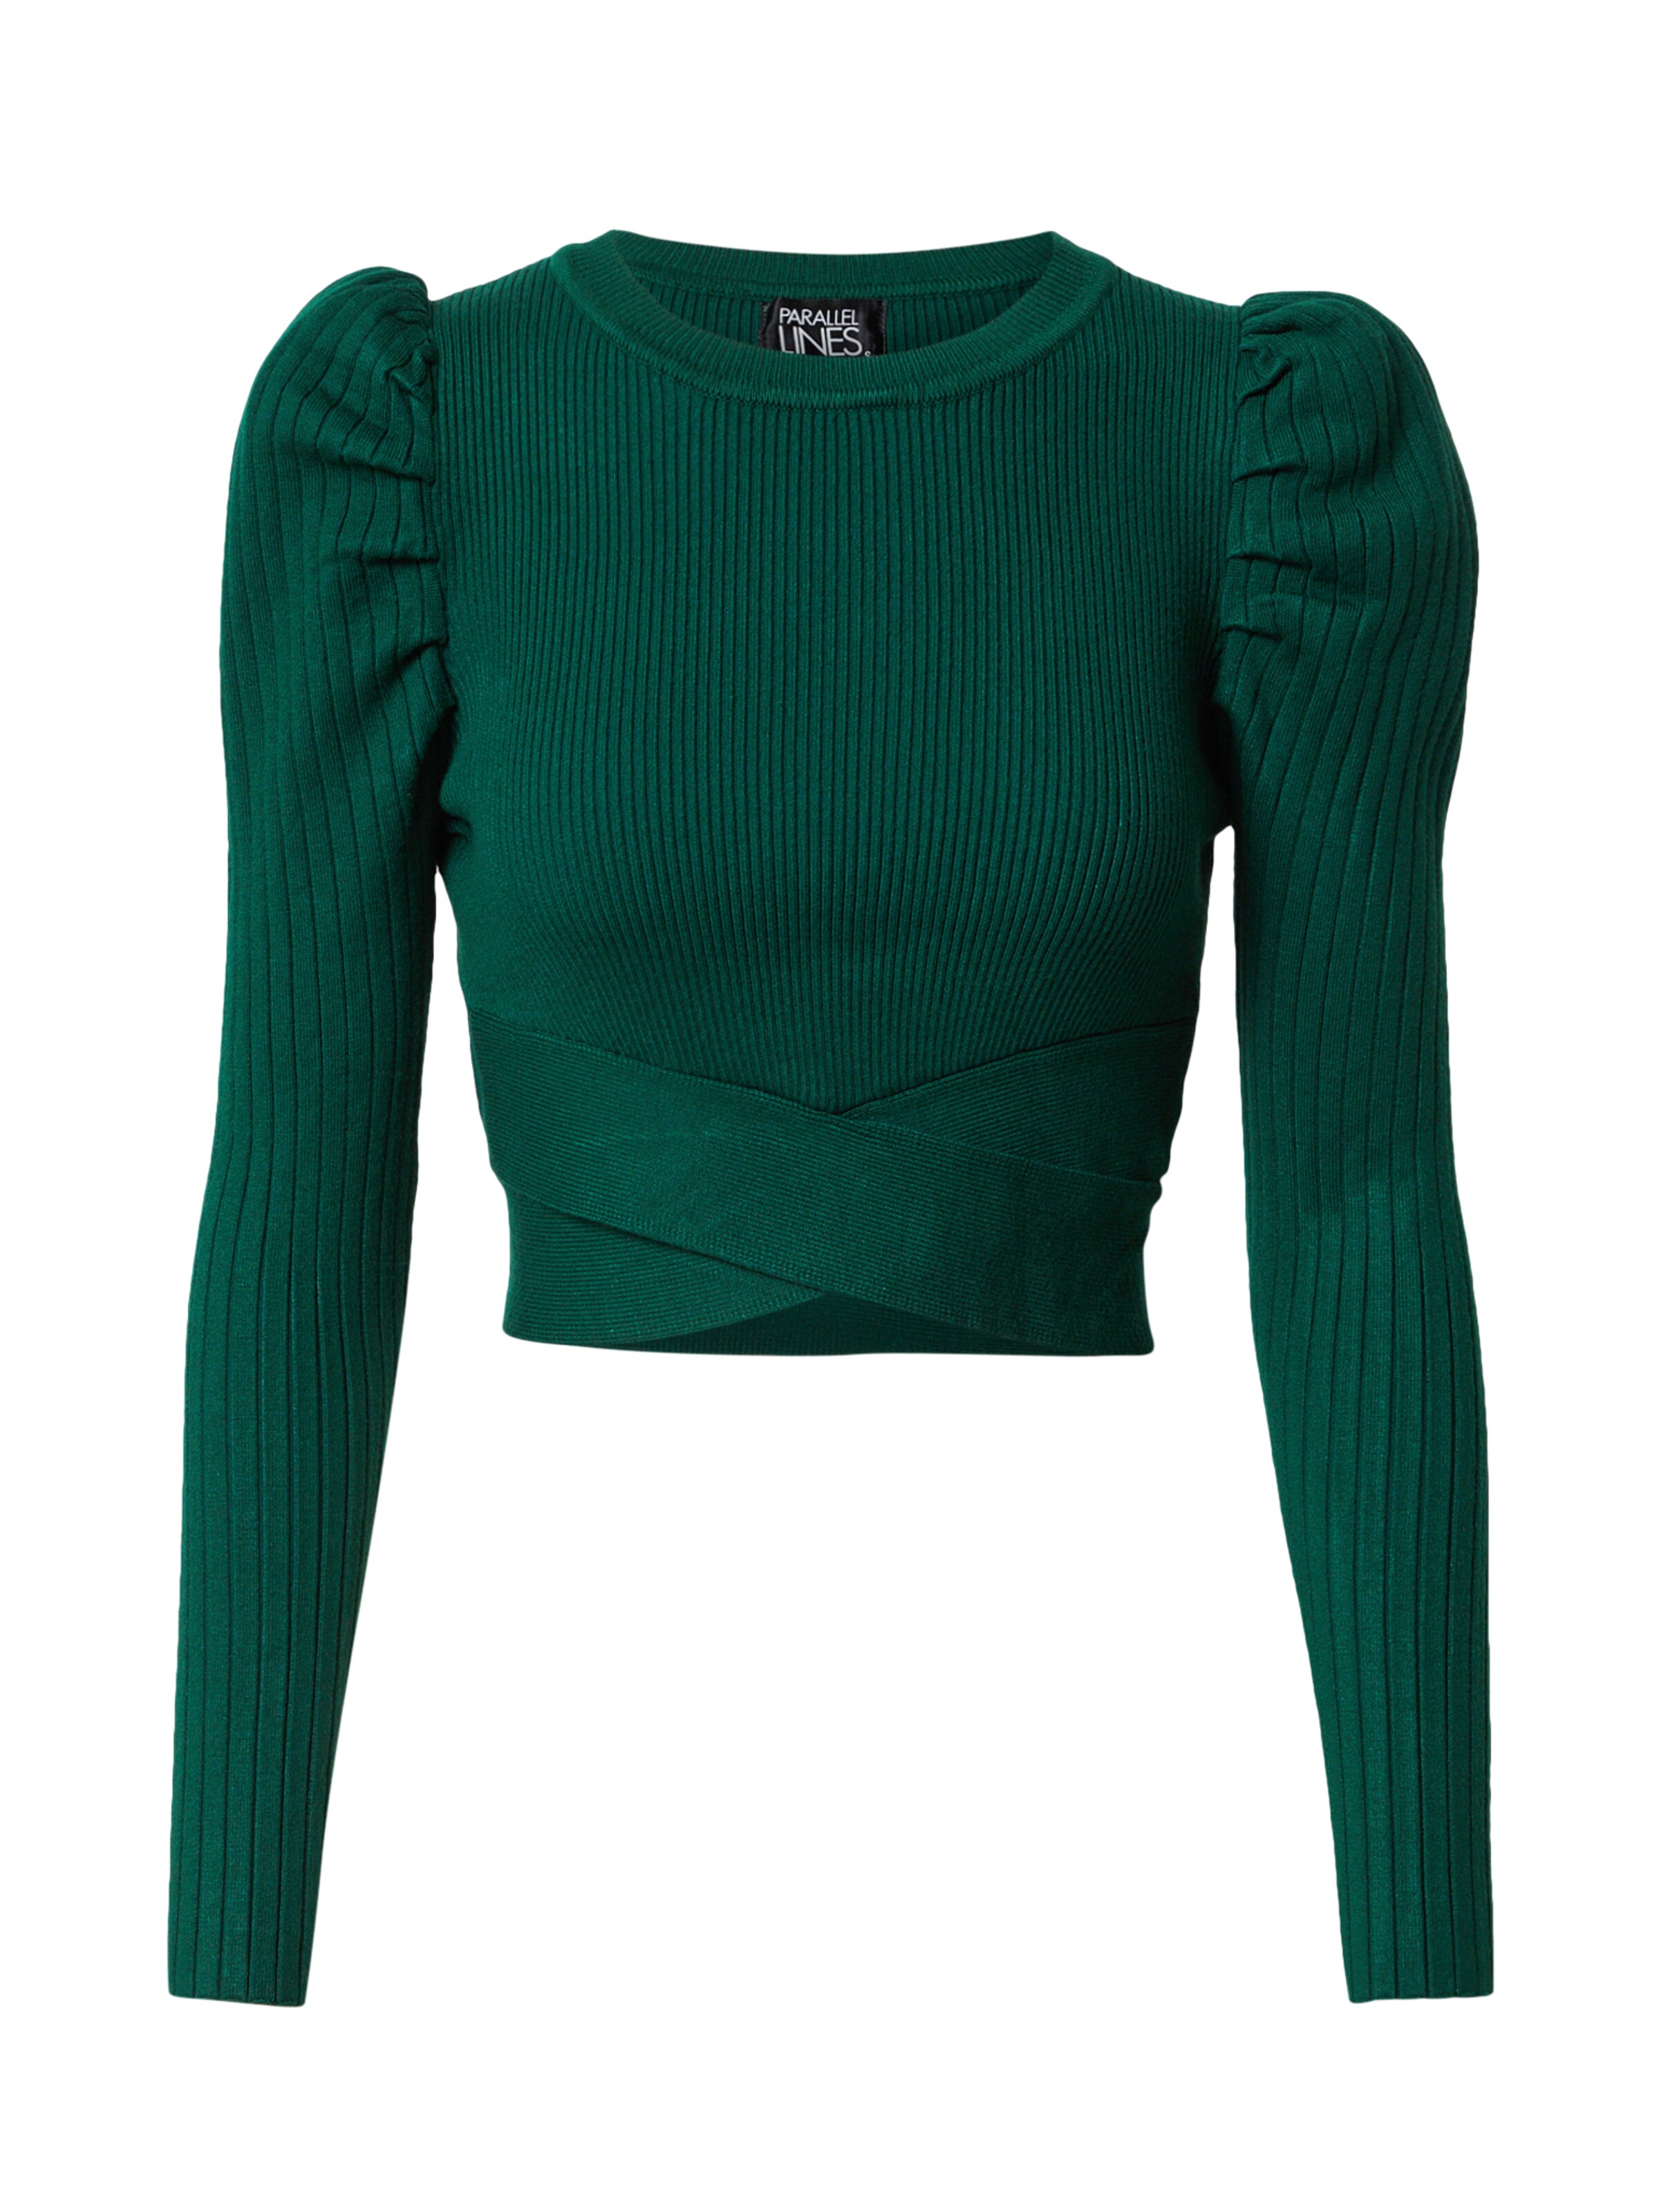 Abbigliamento uUSxy Parallel Lines Maglietta in Verde Scuro 